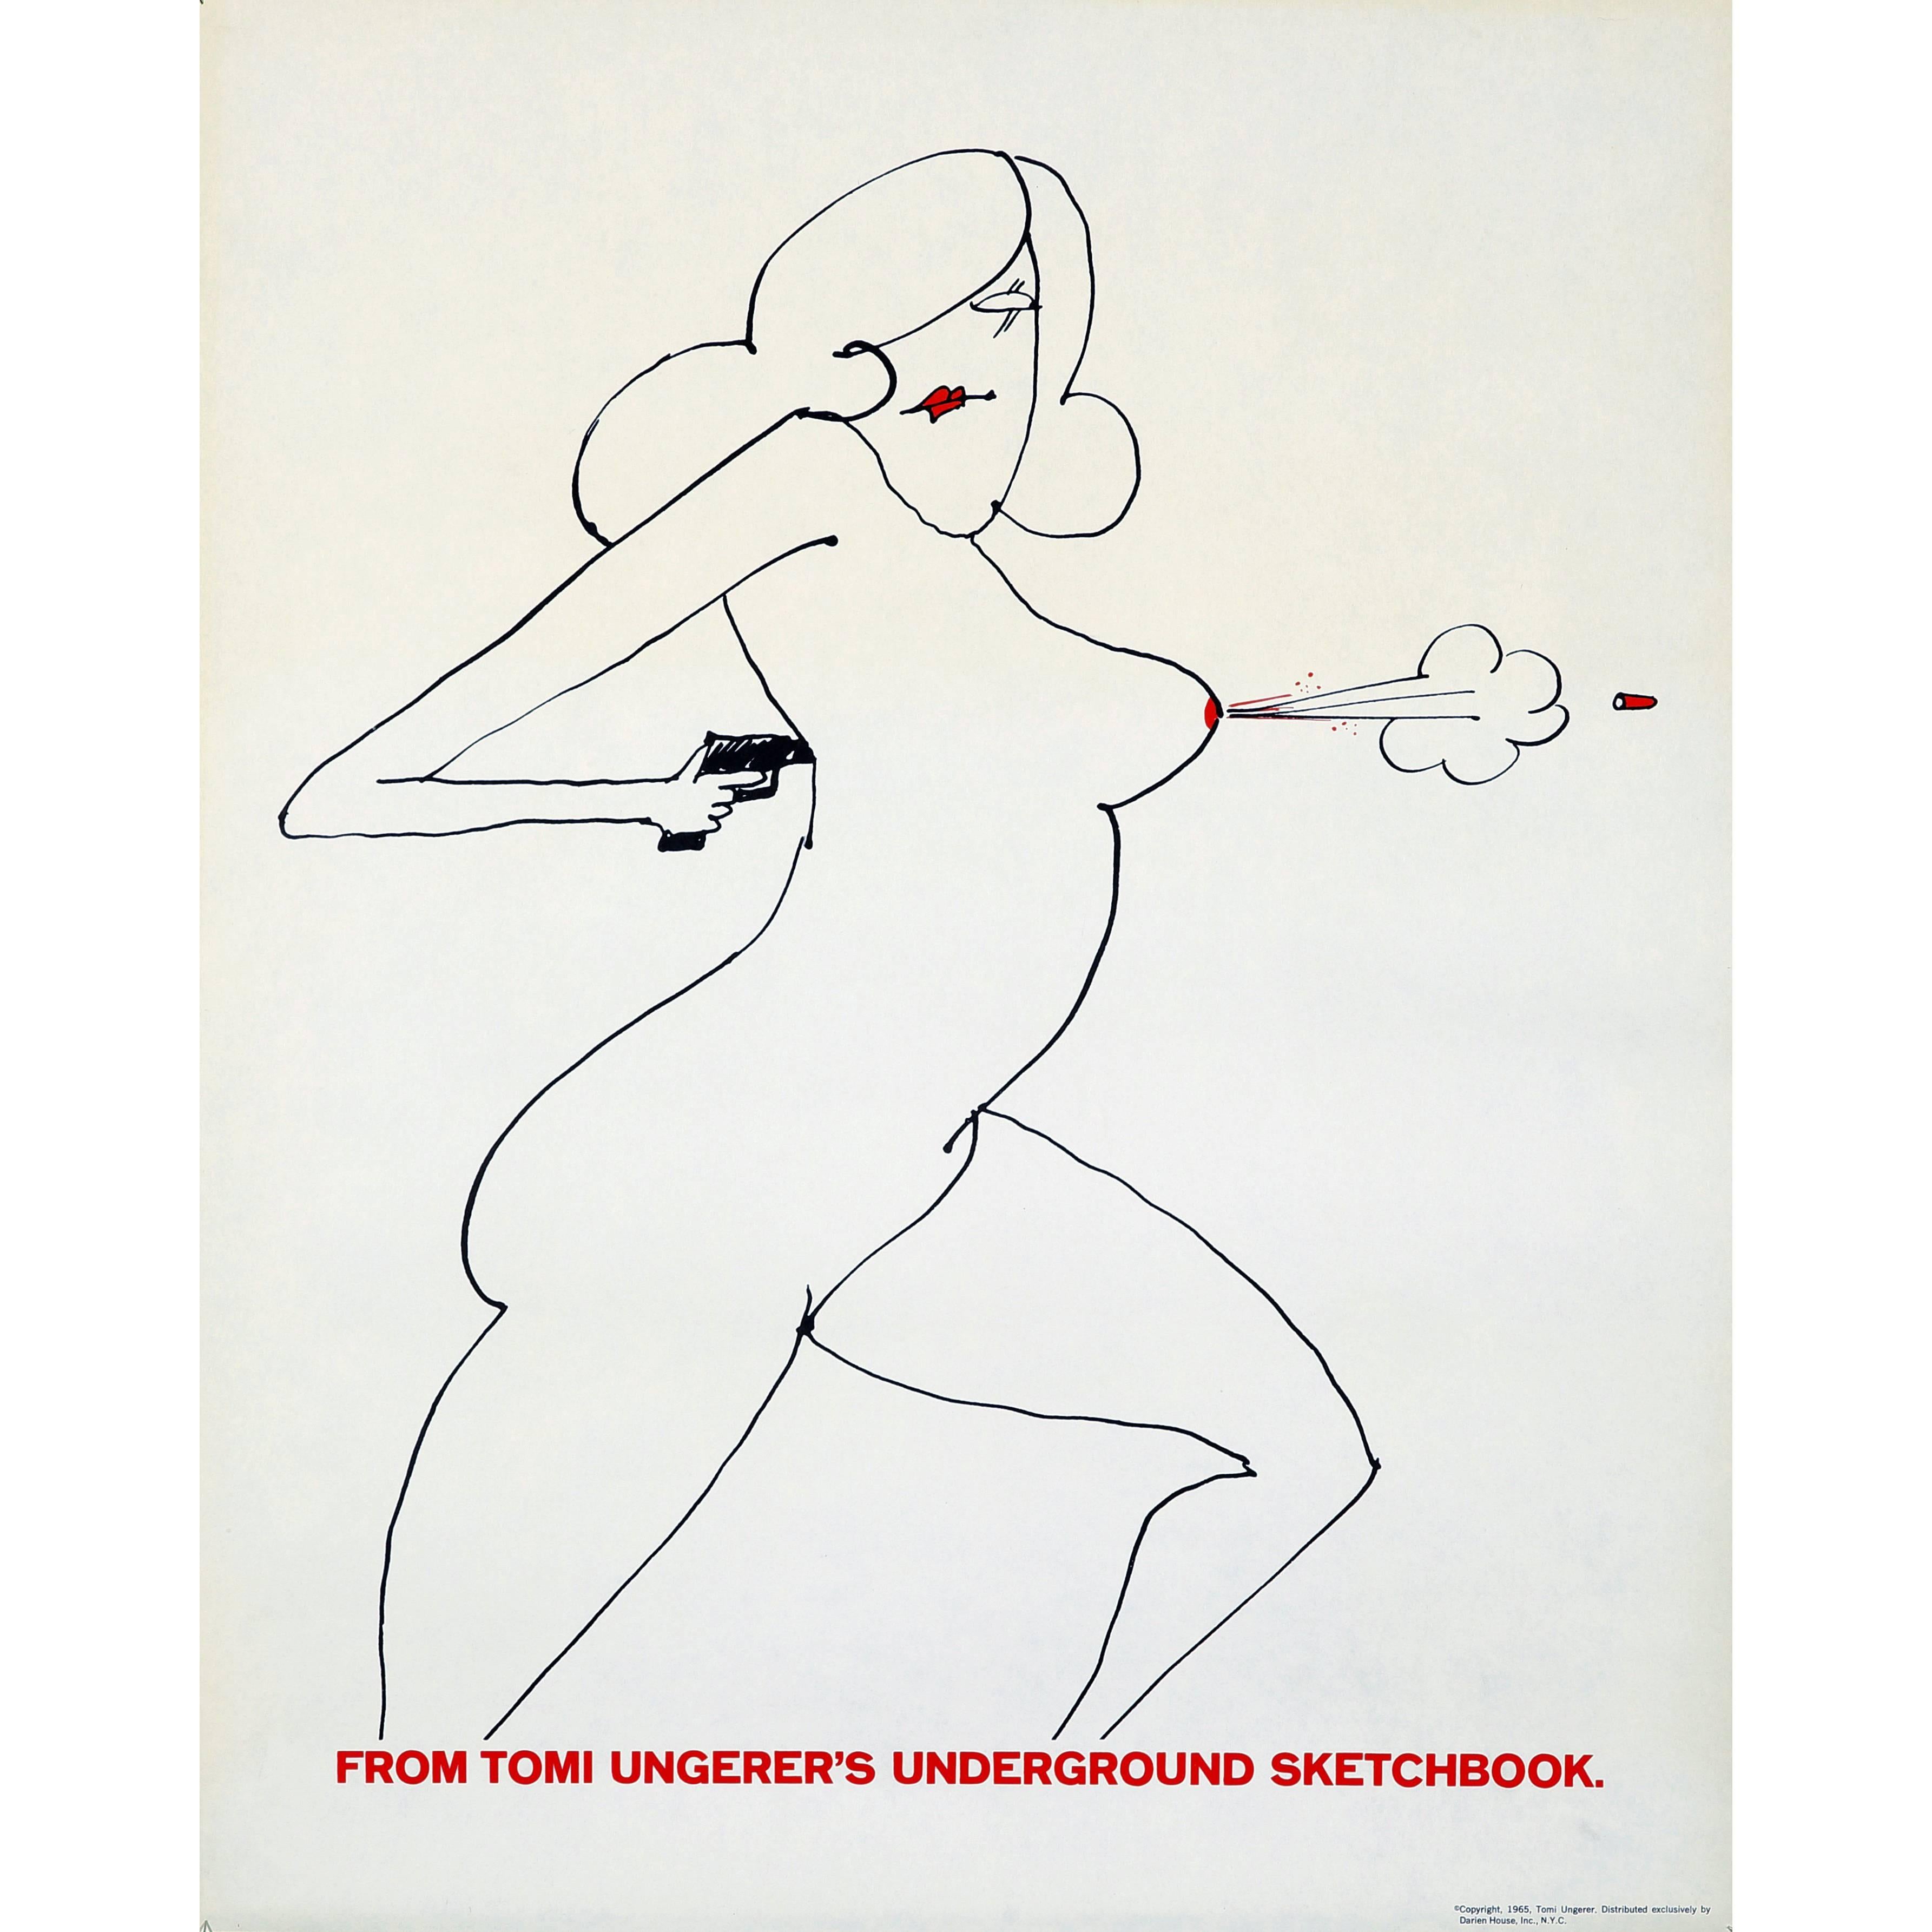 Tomi Ungerer Boob Gun Poster 'from Underground Sketchbook'